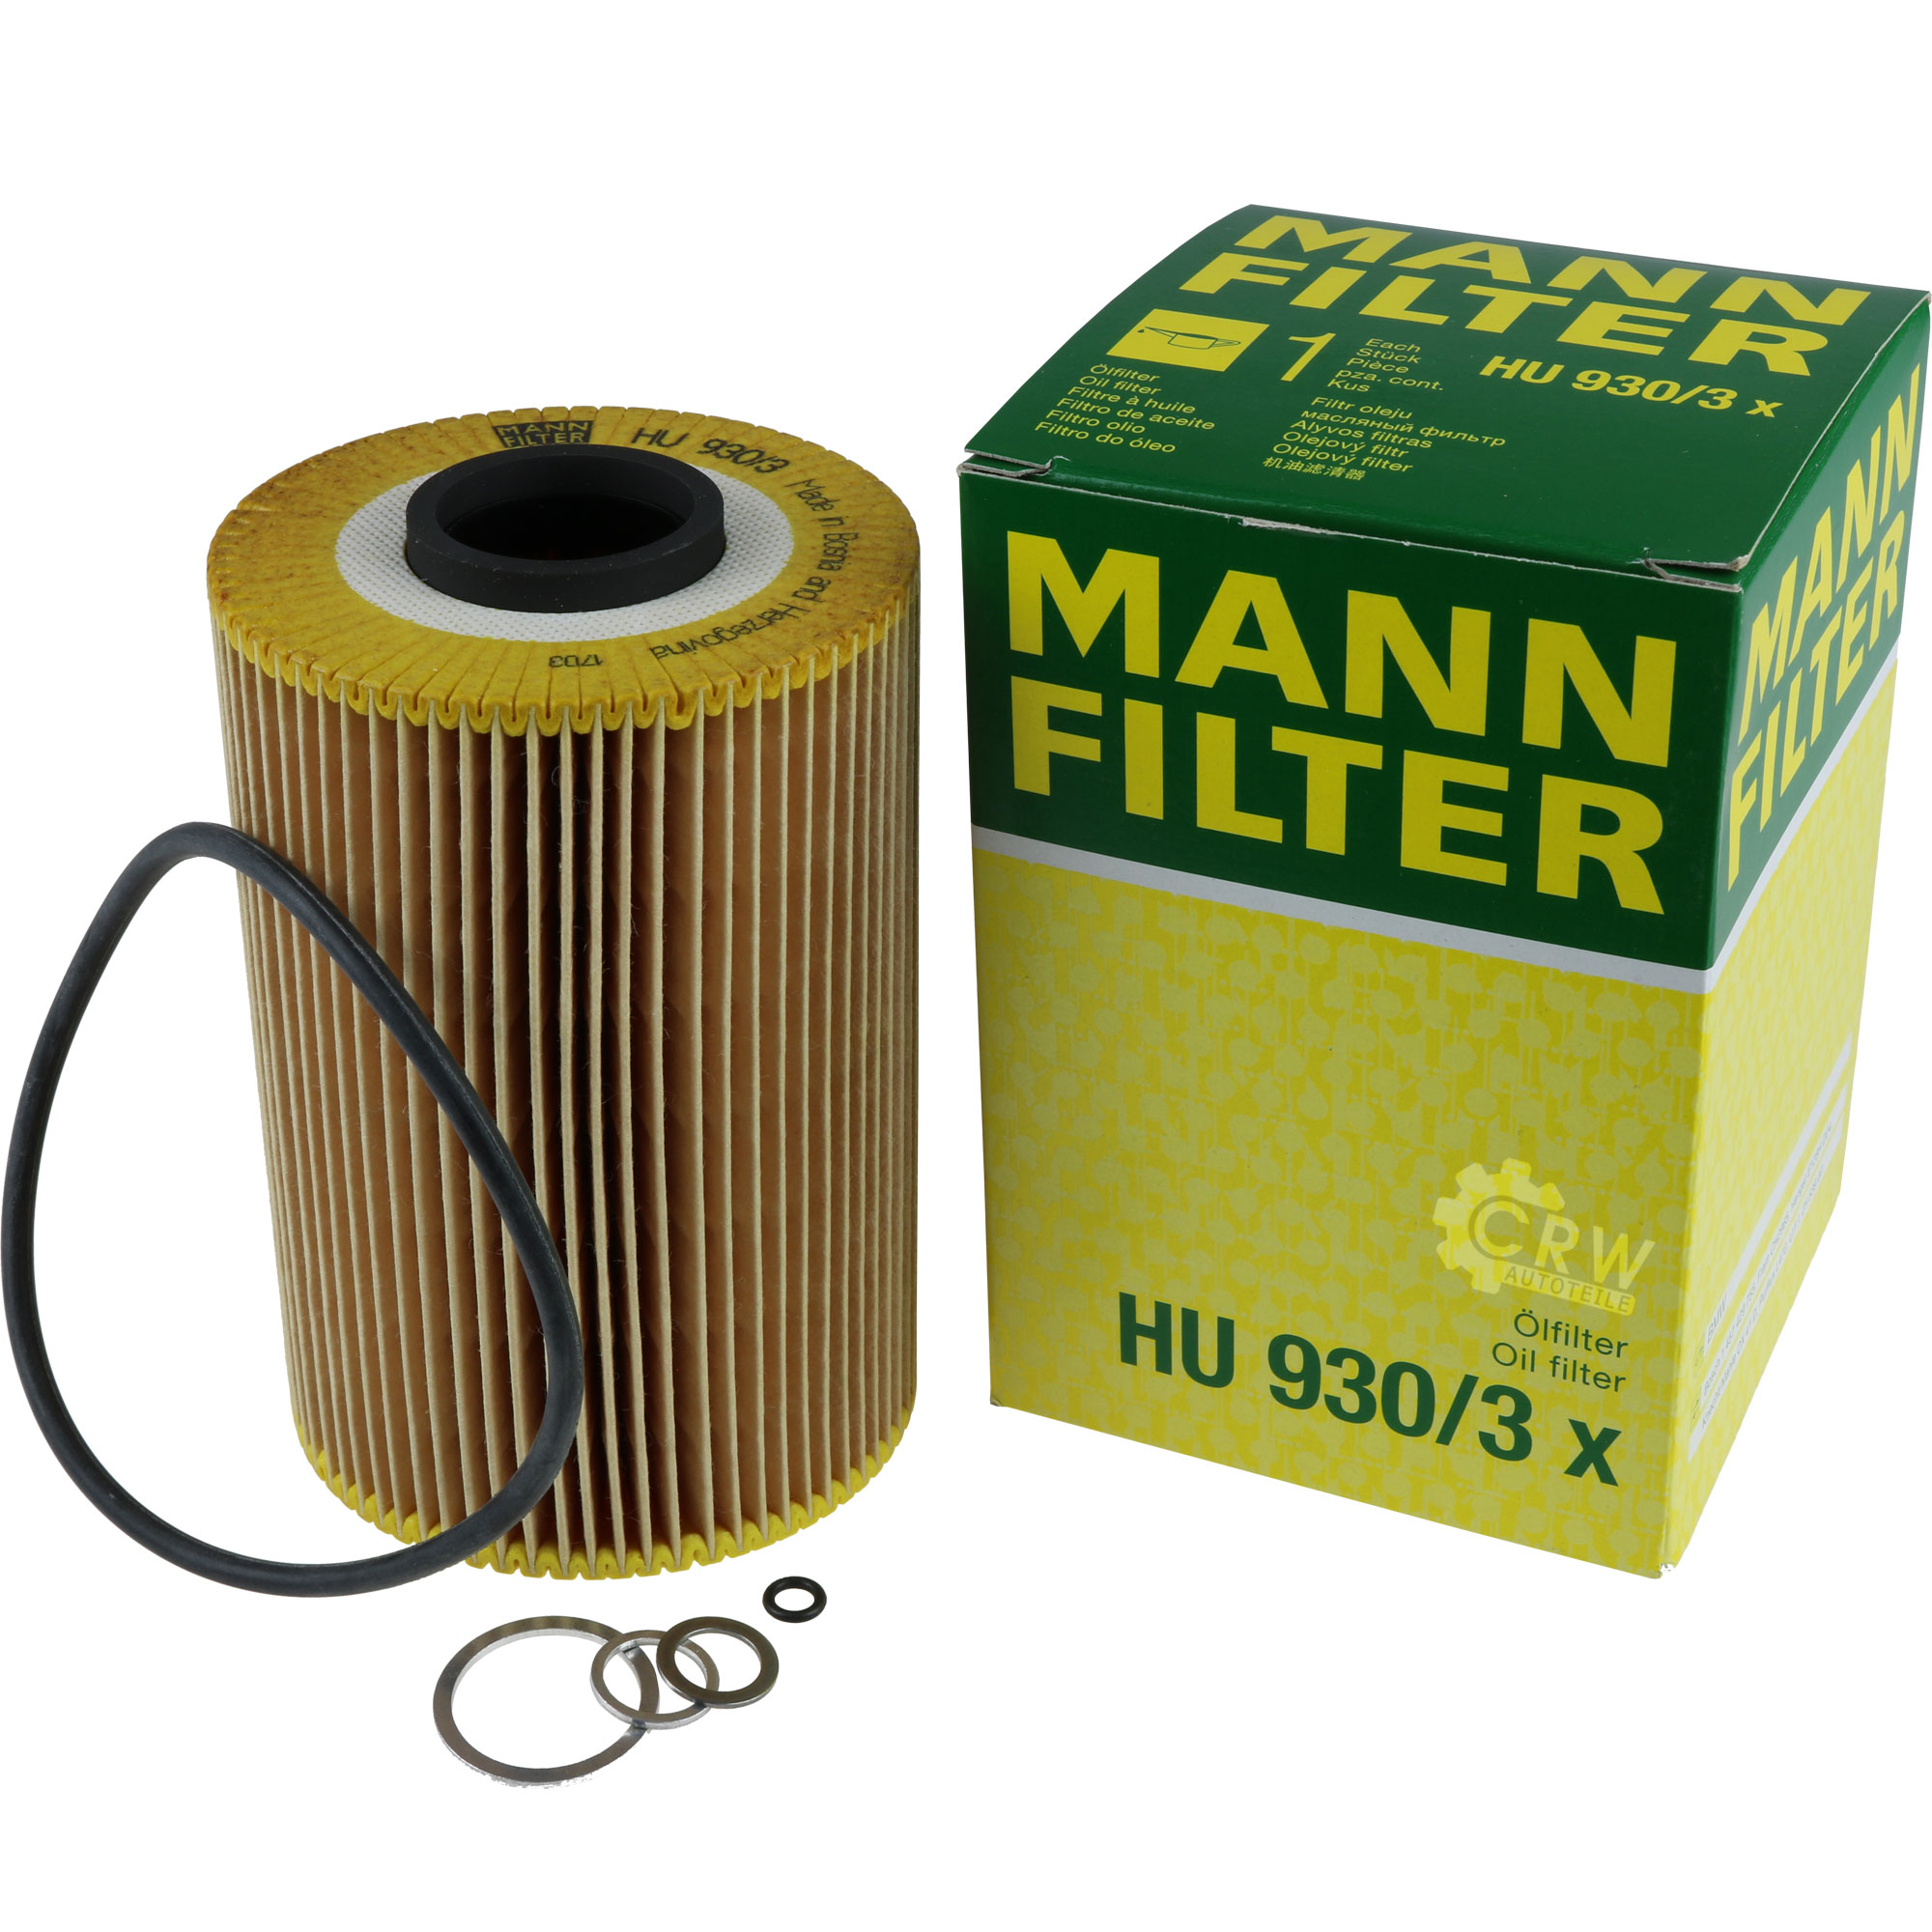 MANN Ölfilter H 930/2